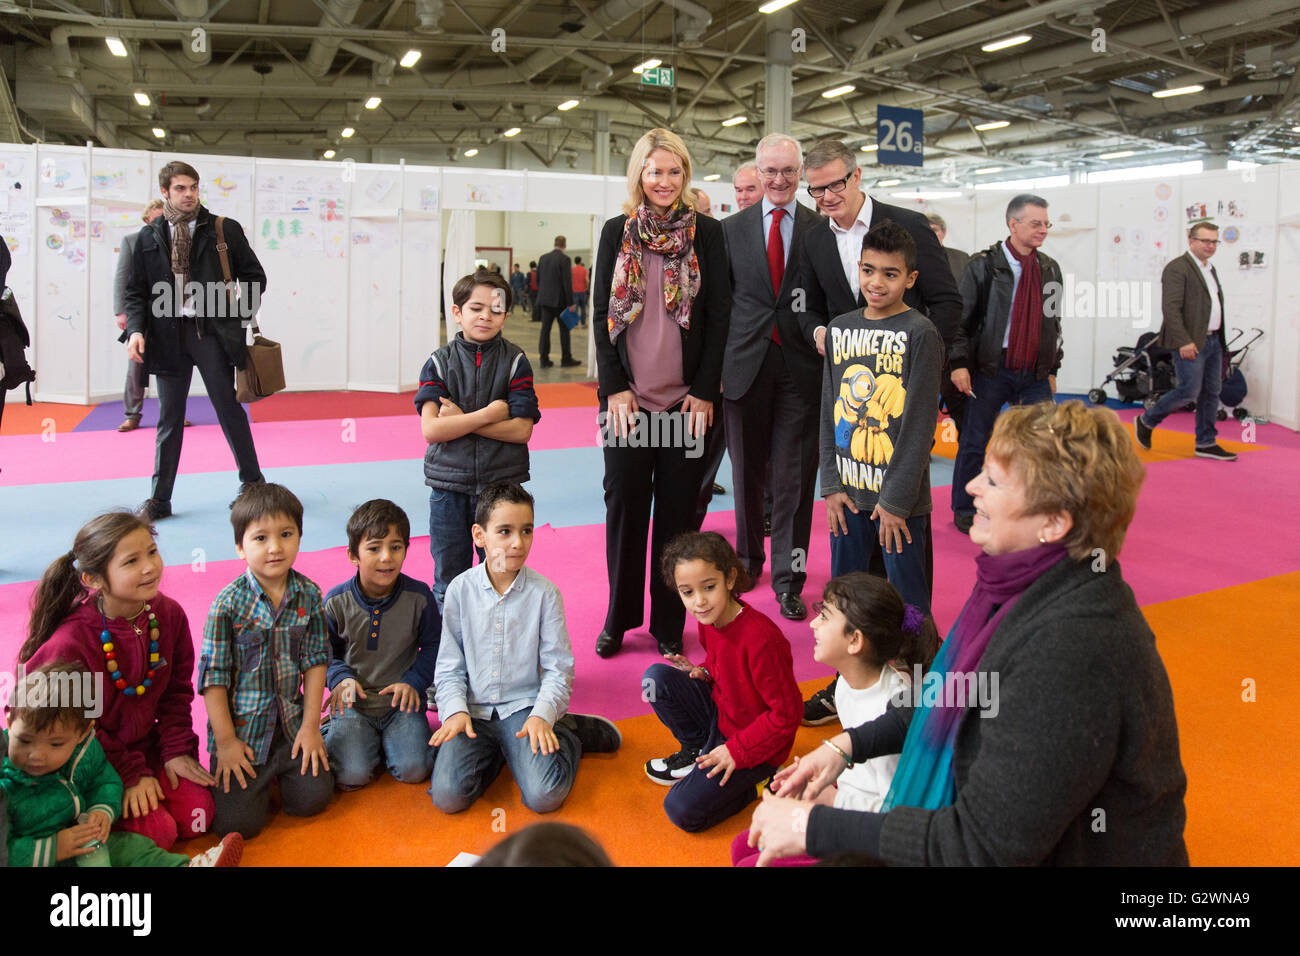 08.12.2015, Berlin, Berlin, Germania - Ministro della famiglia Manuela Schwesig (SPD) visitata presso il centro congressi di un ricovero per i rifugiati. In gestito da Malteser proprietà, circa 1.000 rifugiati registrati sono alloggiati, la maggior parte delle loro famiglie. Qui quando si visita la custodia dei bambini. 0DB151208D006CAROEX.JPG - non per la vendita in G E R M A N Y, A U S T R I A, S W I T Z e R L A N D [modello di rilascio: NO, la proprietà di rilascio: NO, (c) caro agenzia fotografica / Bleicker, http://www.caro-images.com, info@carofoto.pl - Qualsiasi uso di questa immagine è soggetto a royalty!] Foto Stock